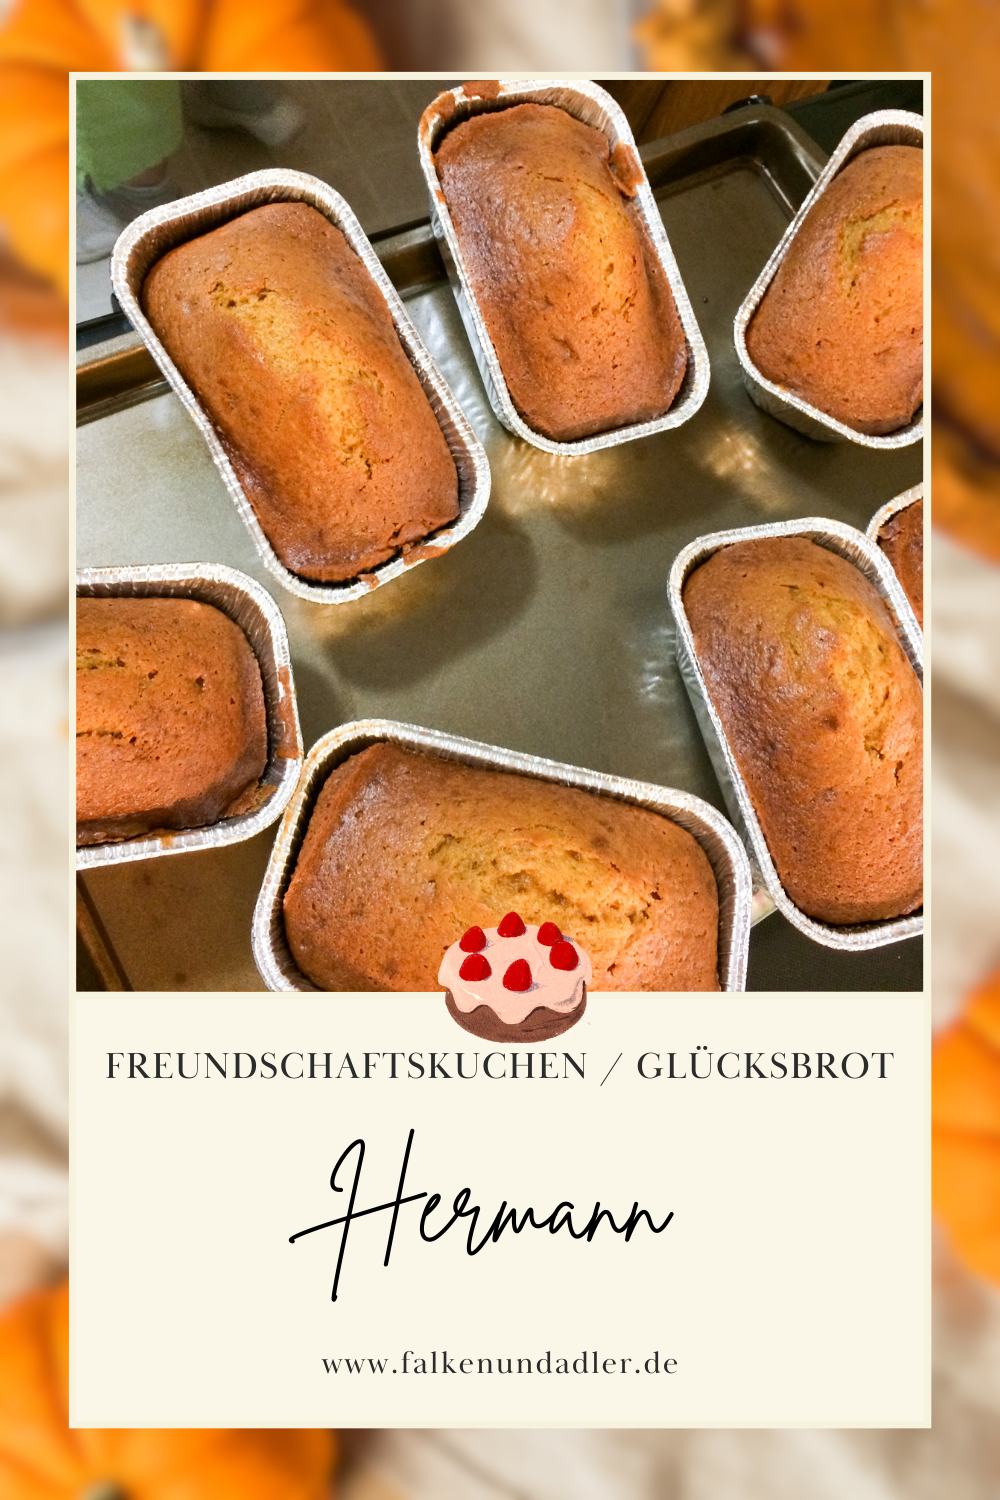 Hermann Glücksbrot Freundschaftkuchen